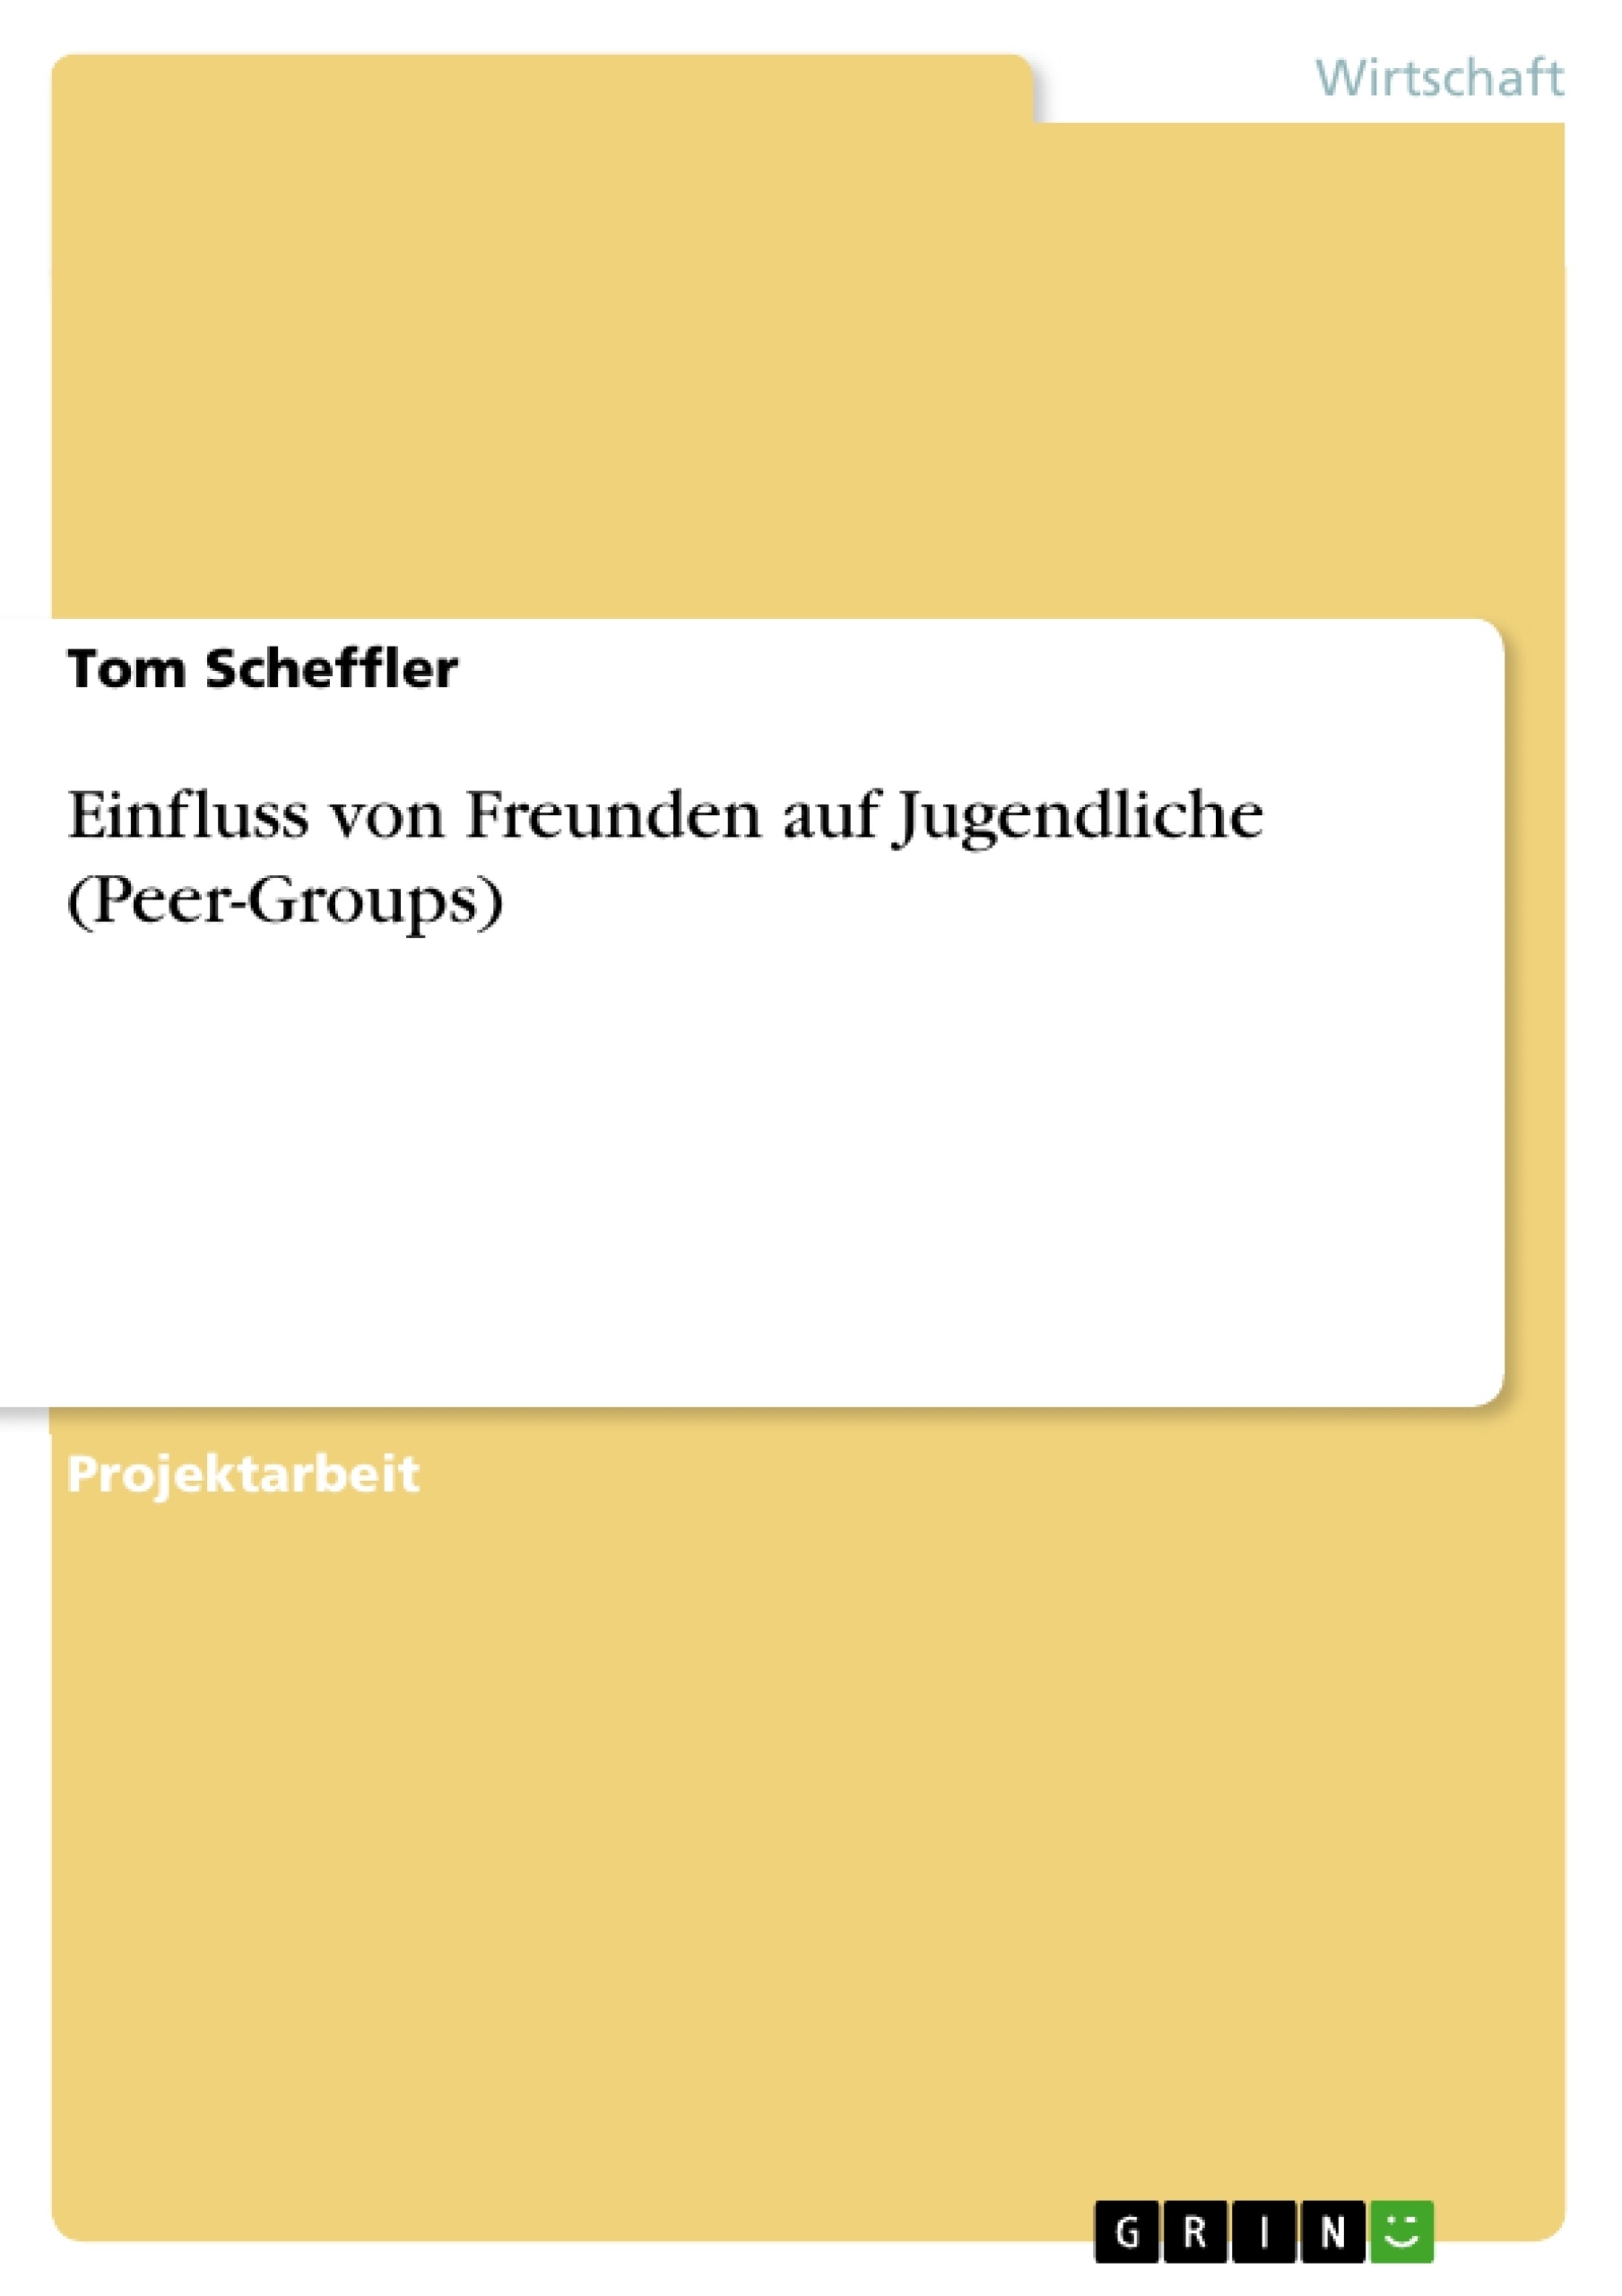 Title: Einfluss von Freunden auf Jugendliche (Peer-Groups)